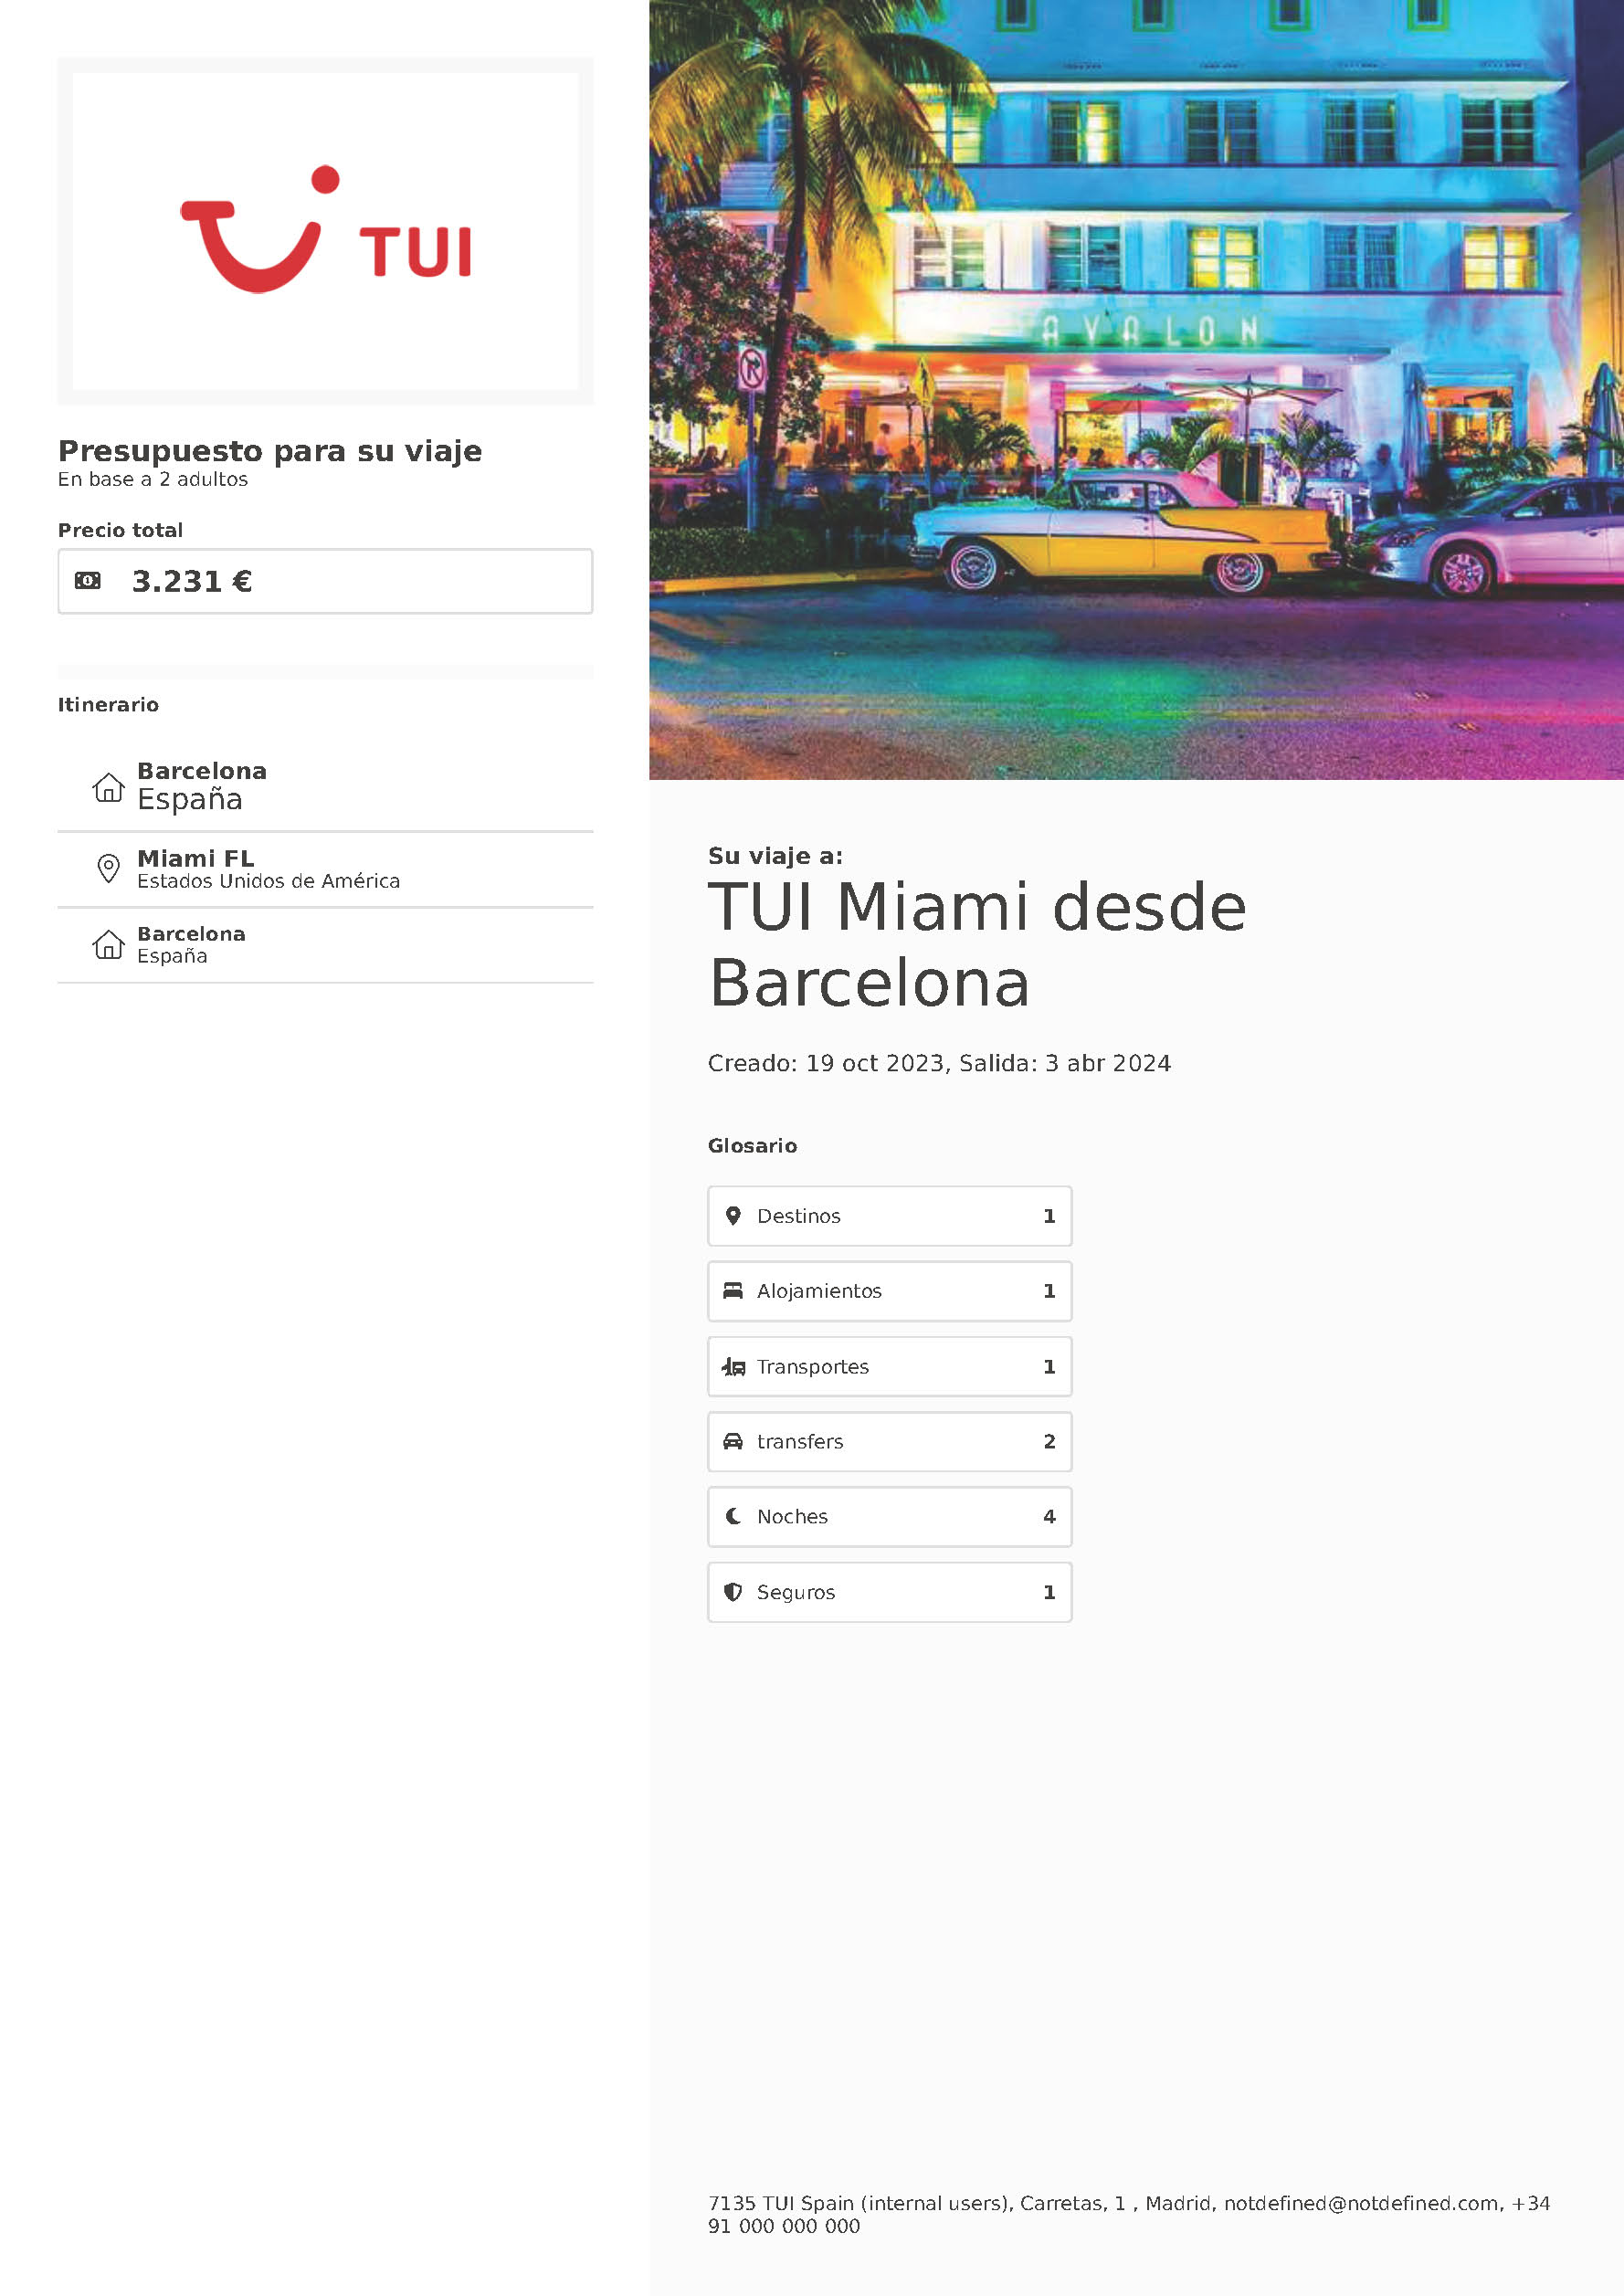 Oferta TUI Estados Unidos 2023-2024 Estancia en Miami 6 dias Hotel Riu salida en vuelo directo desde Barcelona vuelos Iberia